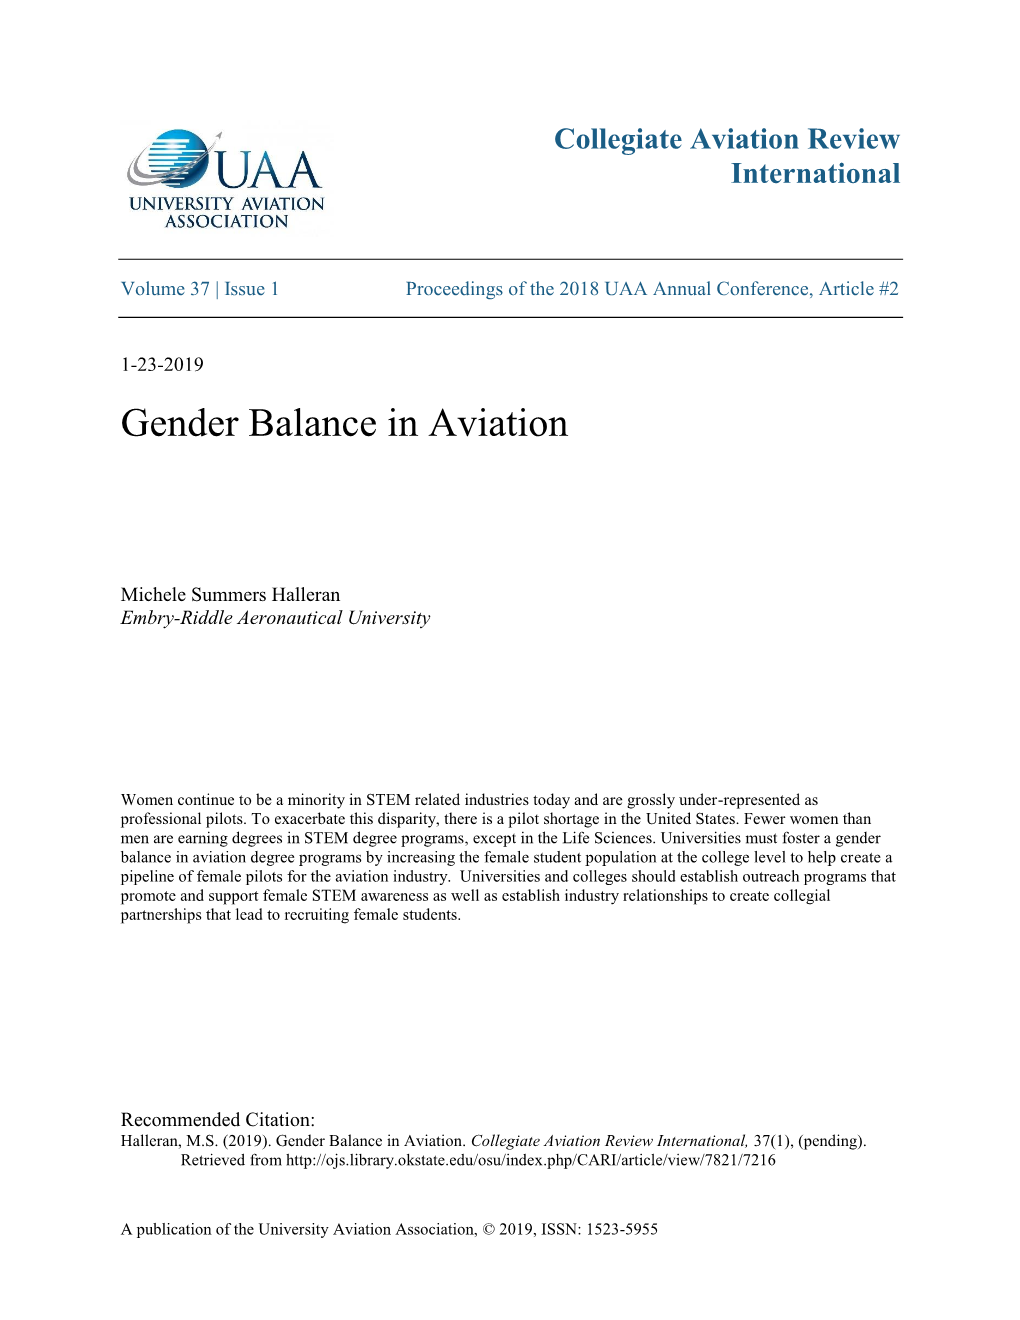 Gender Balance in Aviation